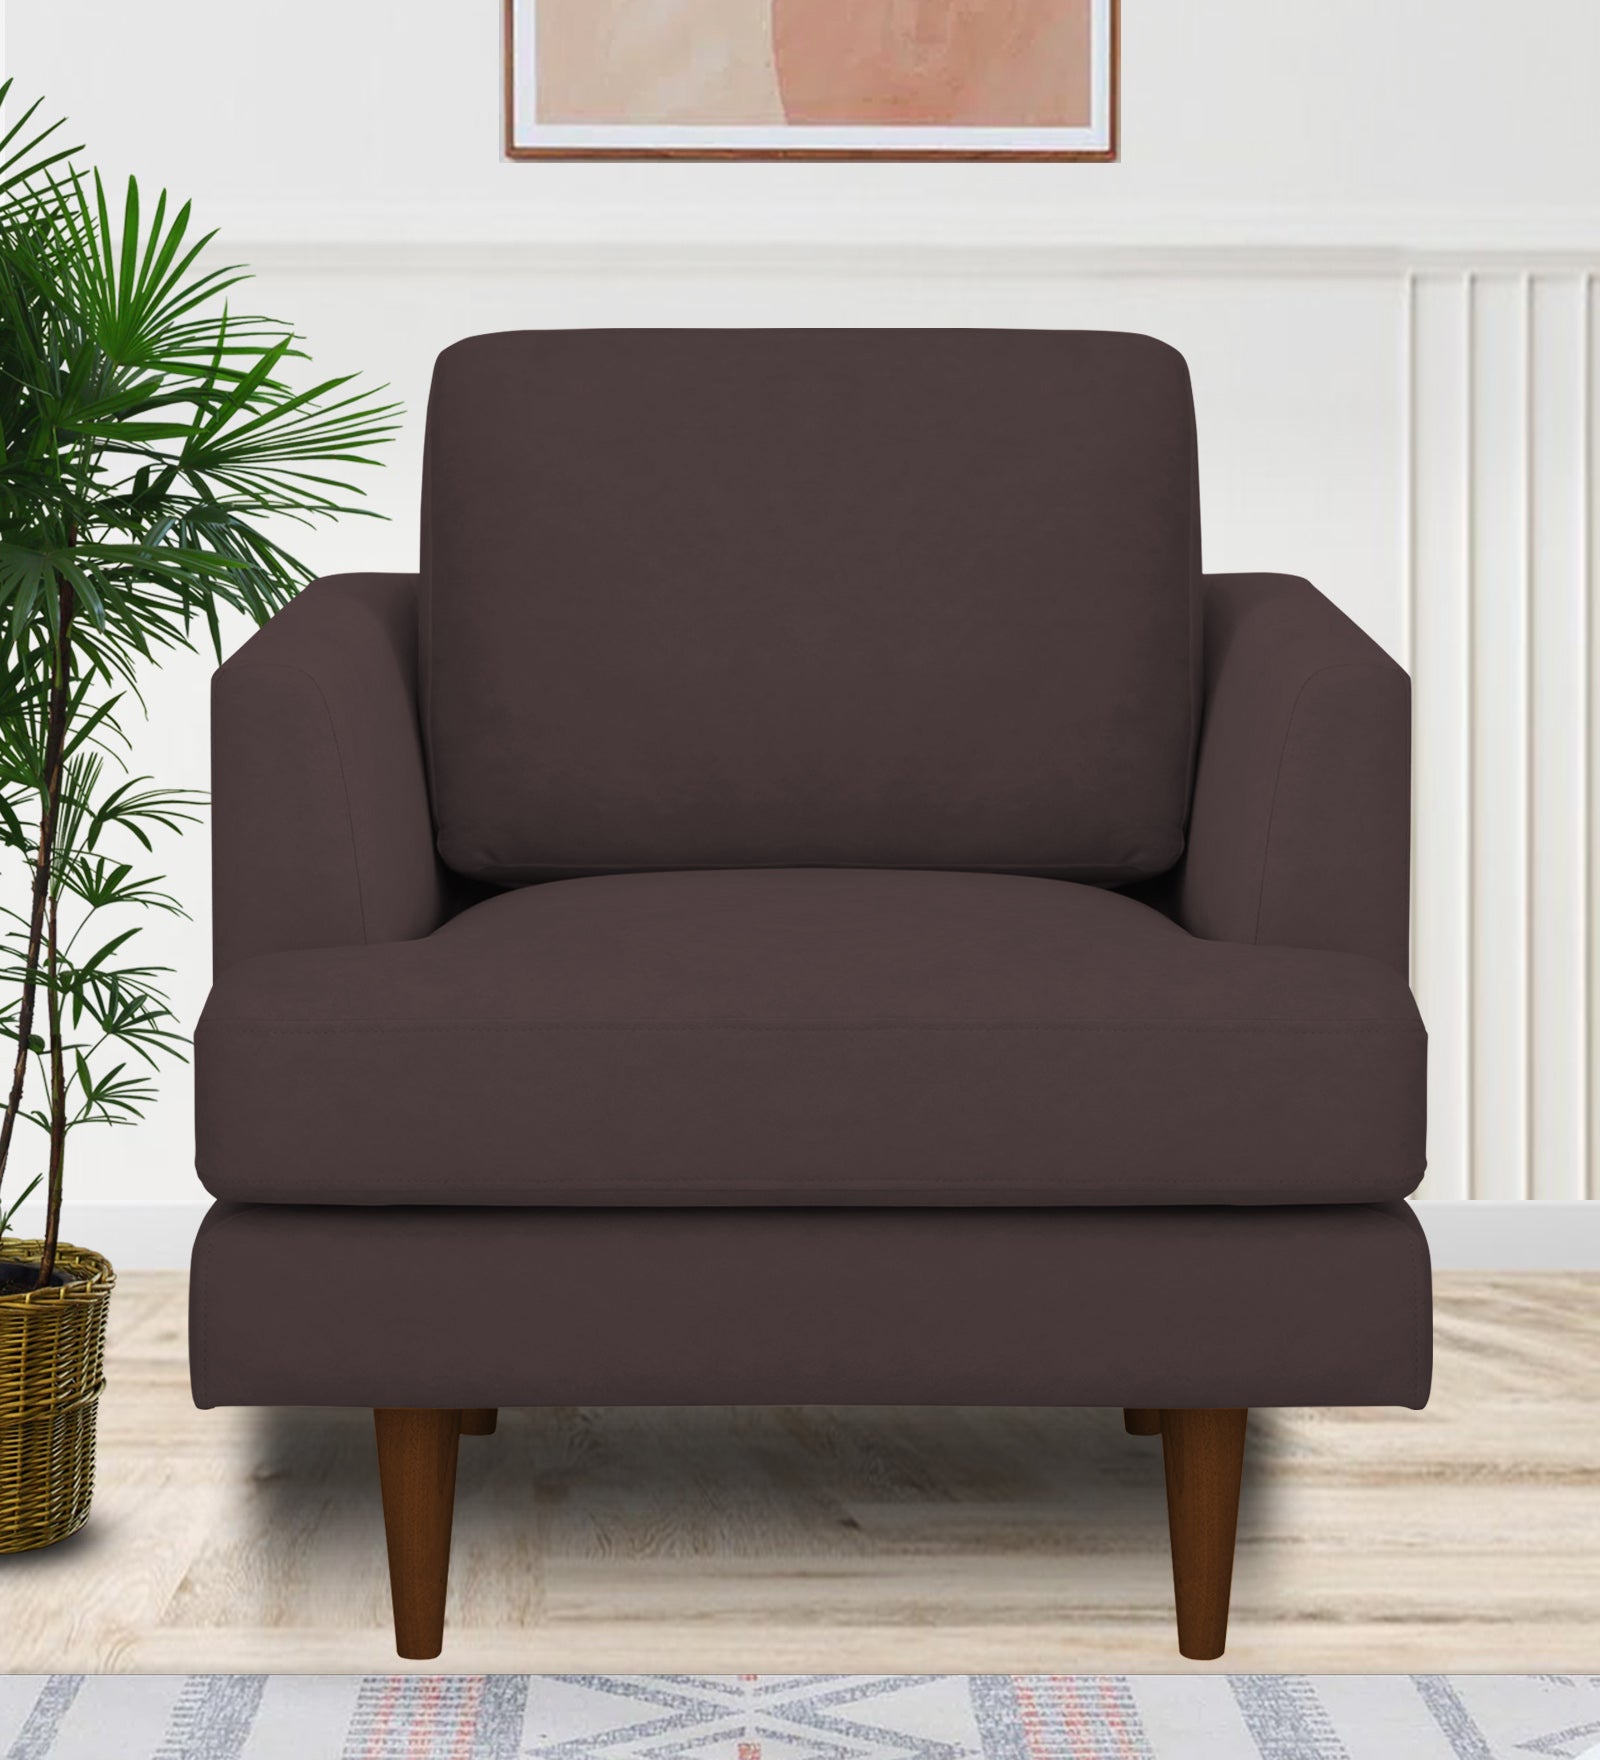 Motra Velvet 1 Seater Sofa in Mocha Brown Colour